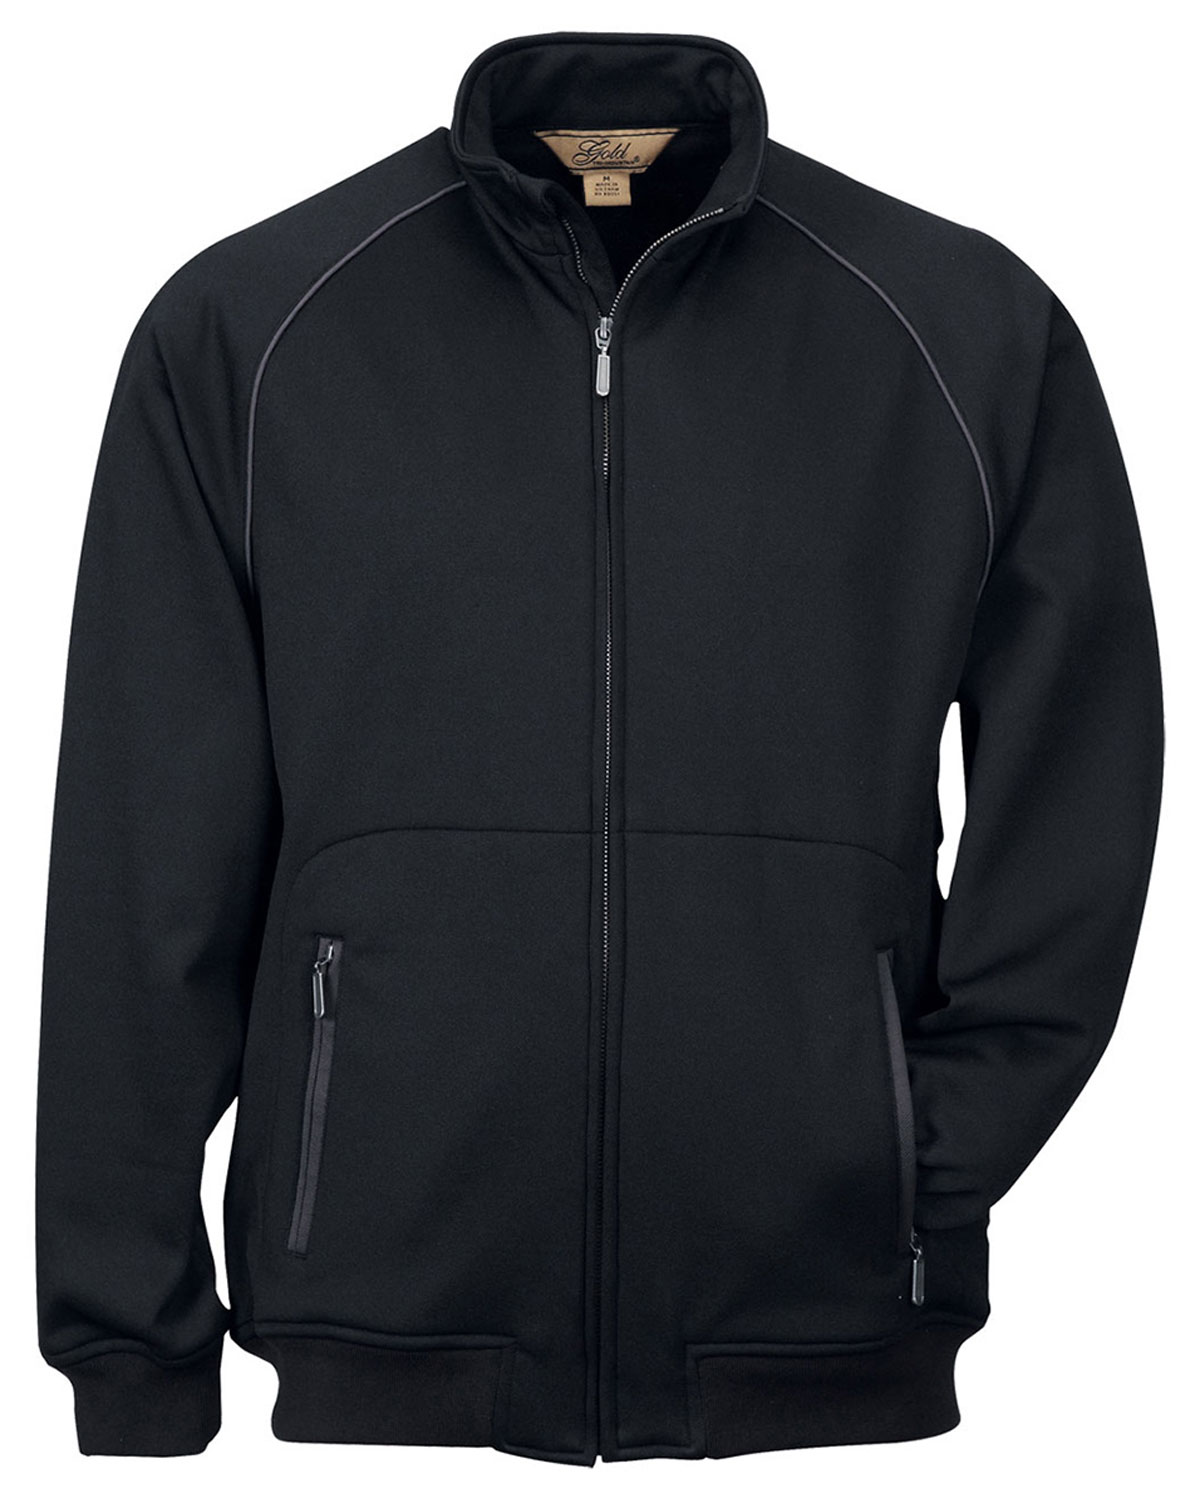 Polyester Knit Jacket- Fleece Jackets- Buy Big Size Wholesale Knit Jacket